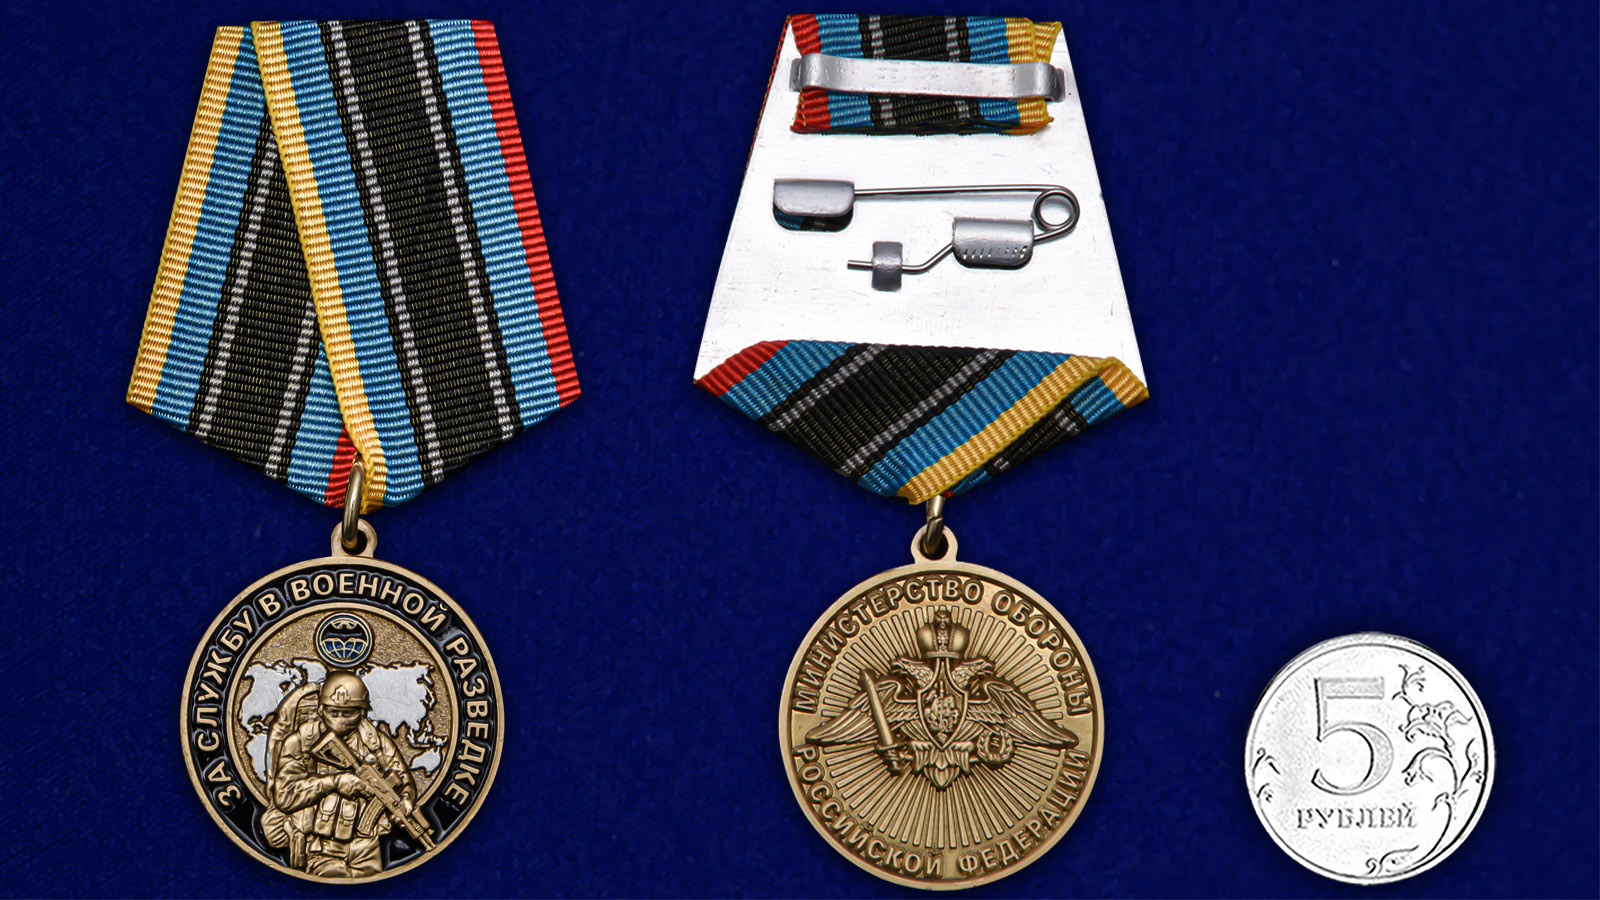 Памятная медаль "За службу в Военной разведке" 